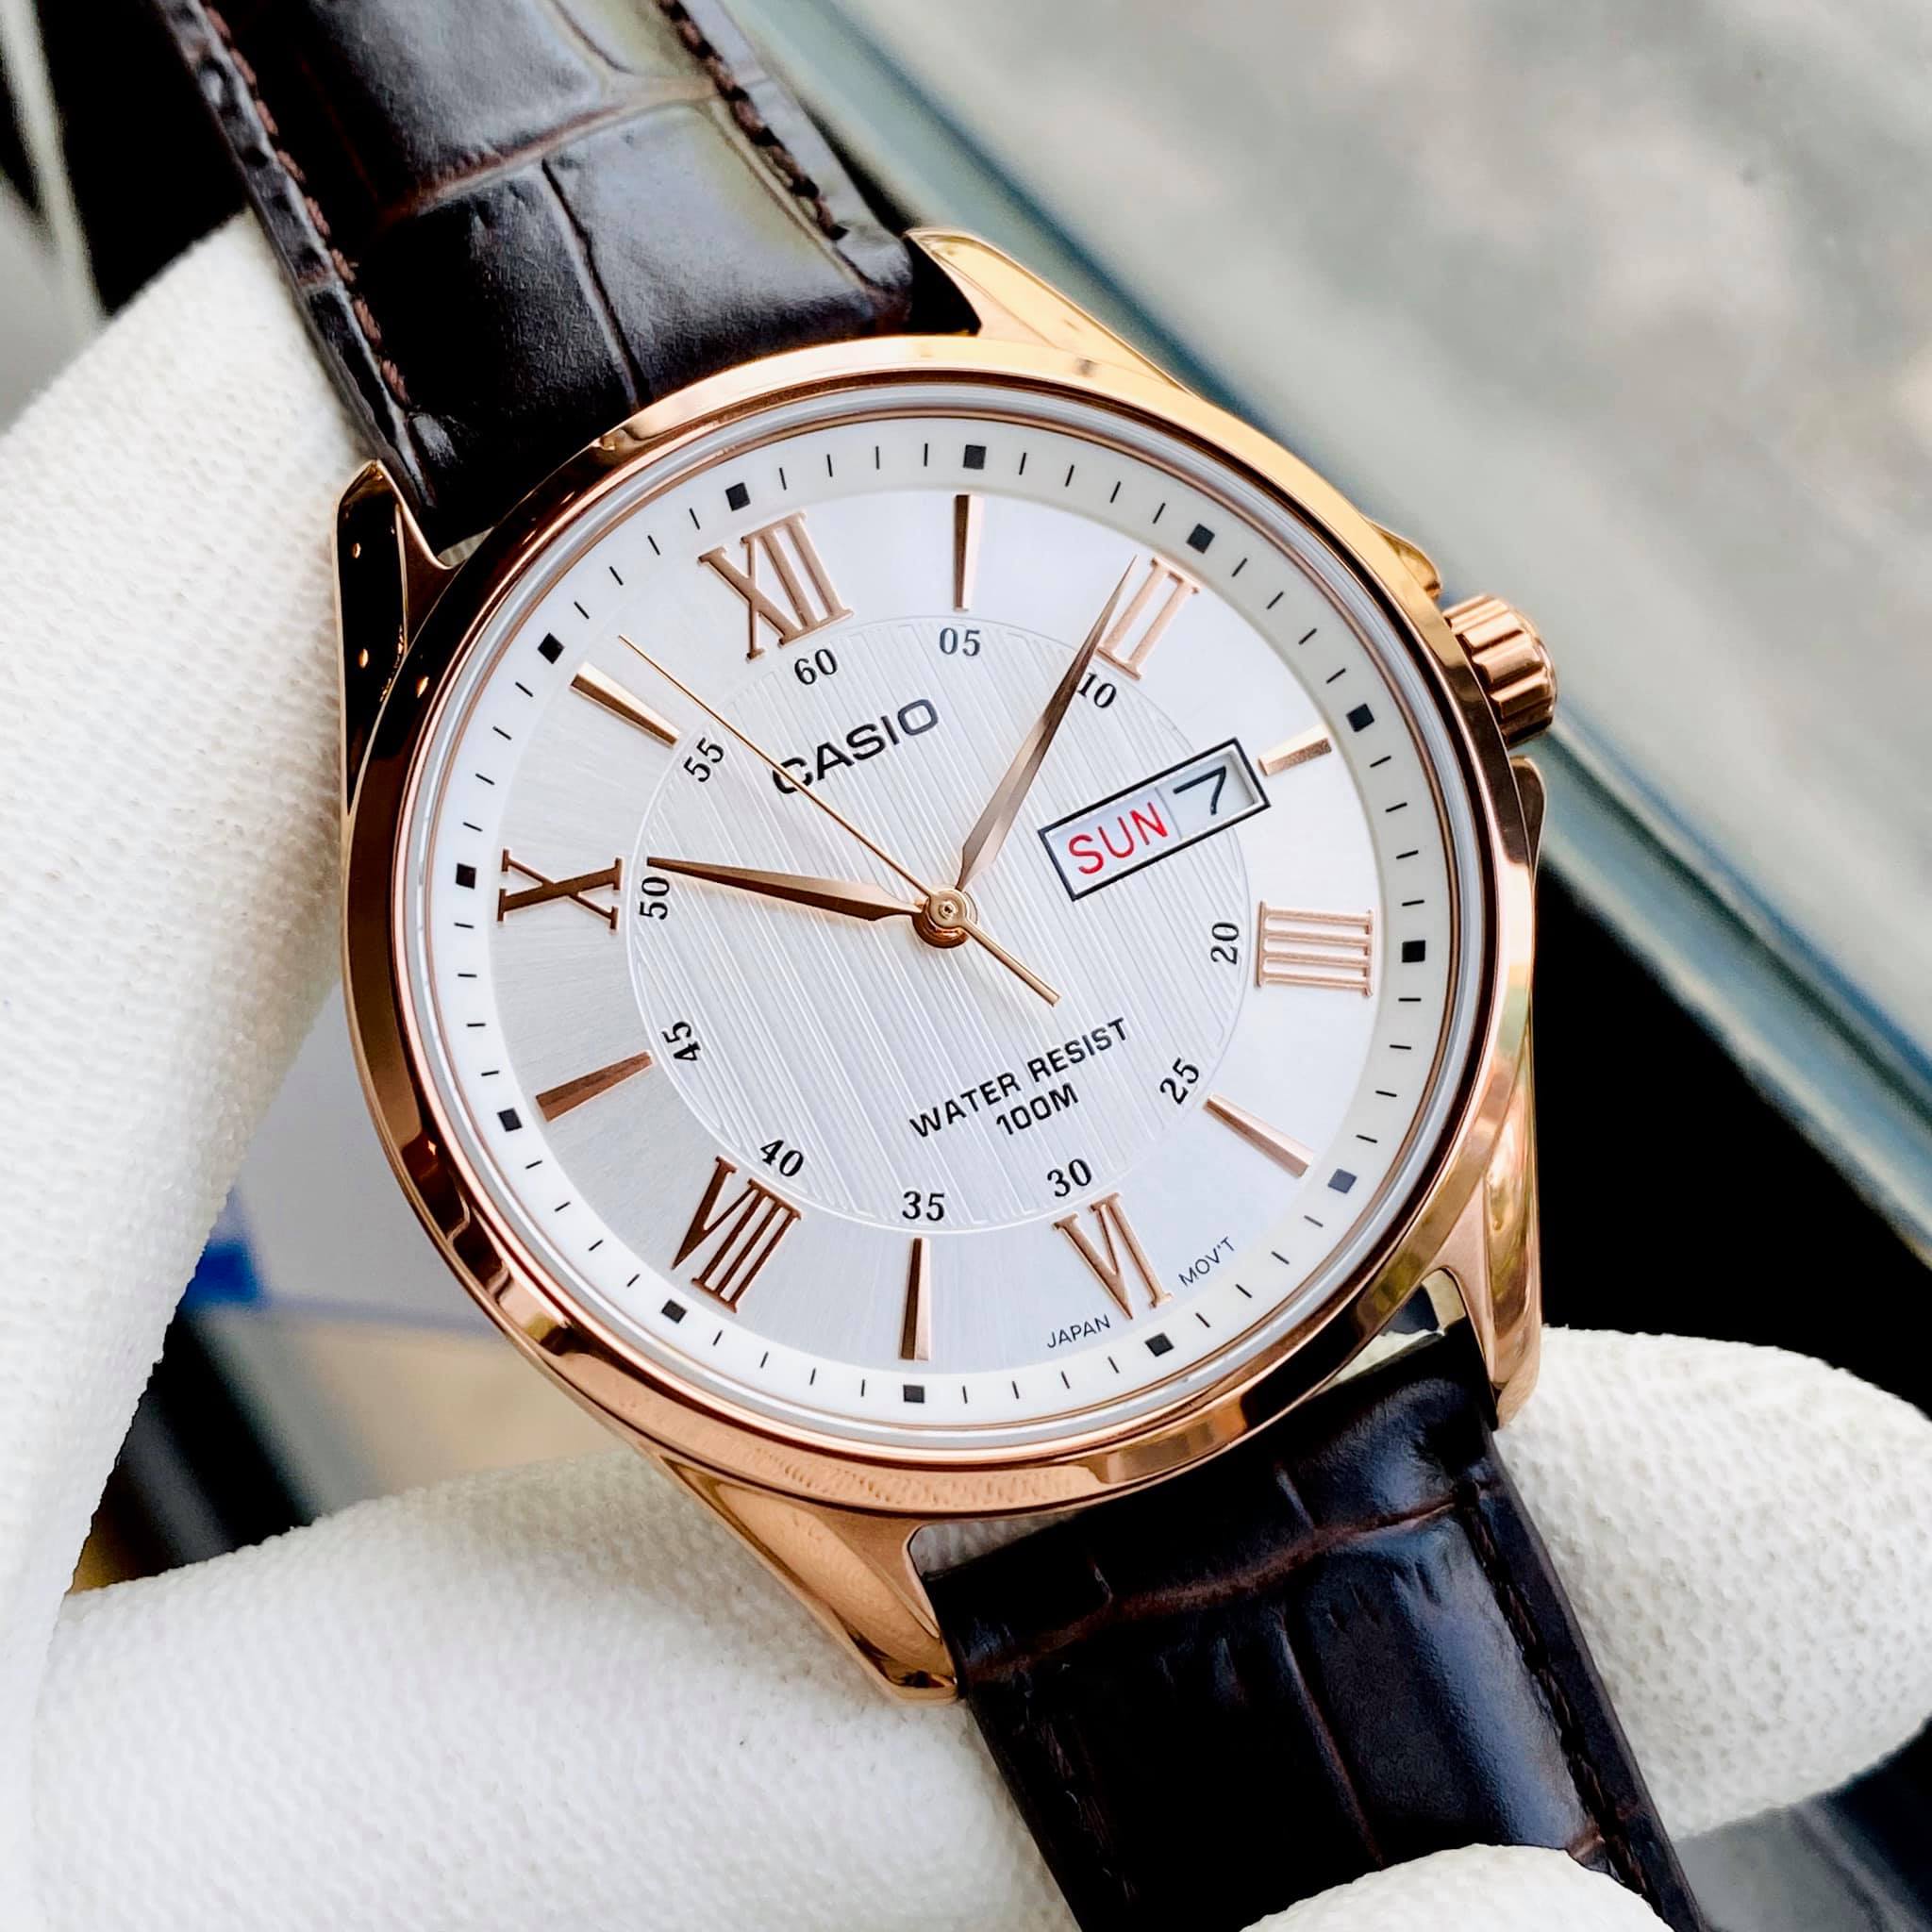 Đồng hồ nam dây da mặt trắng Casio MTP 1384L - 7A Bảo hành 1 năm Hyma watch